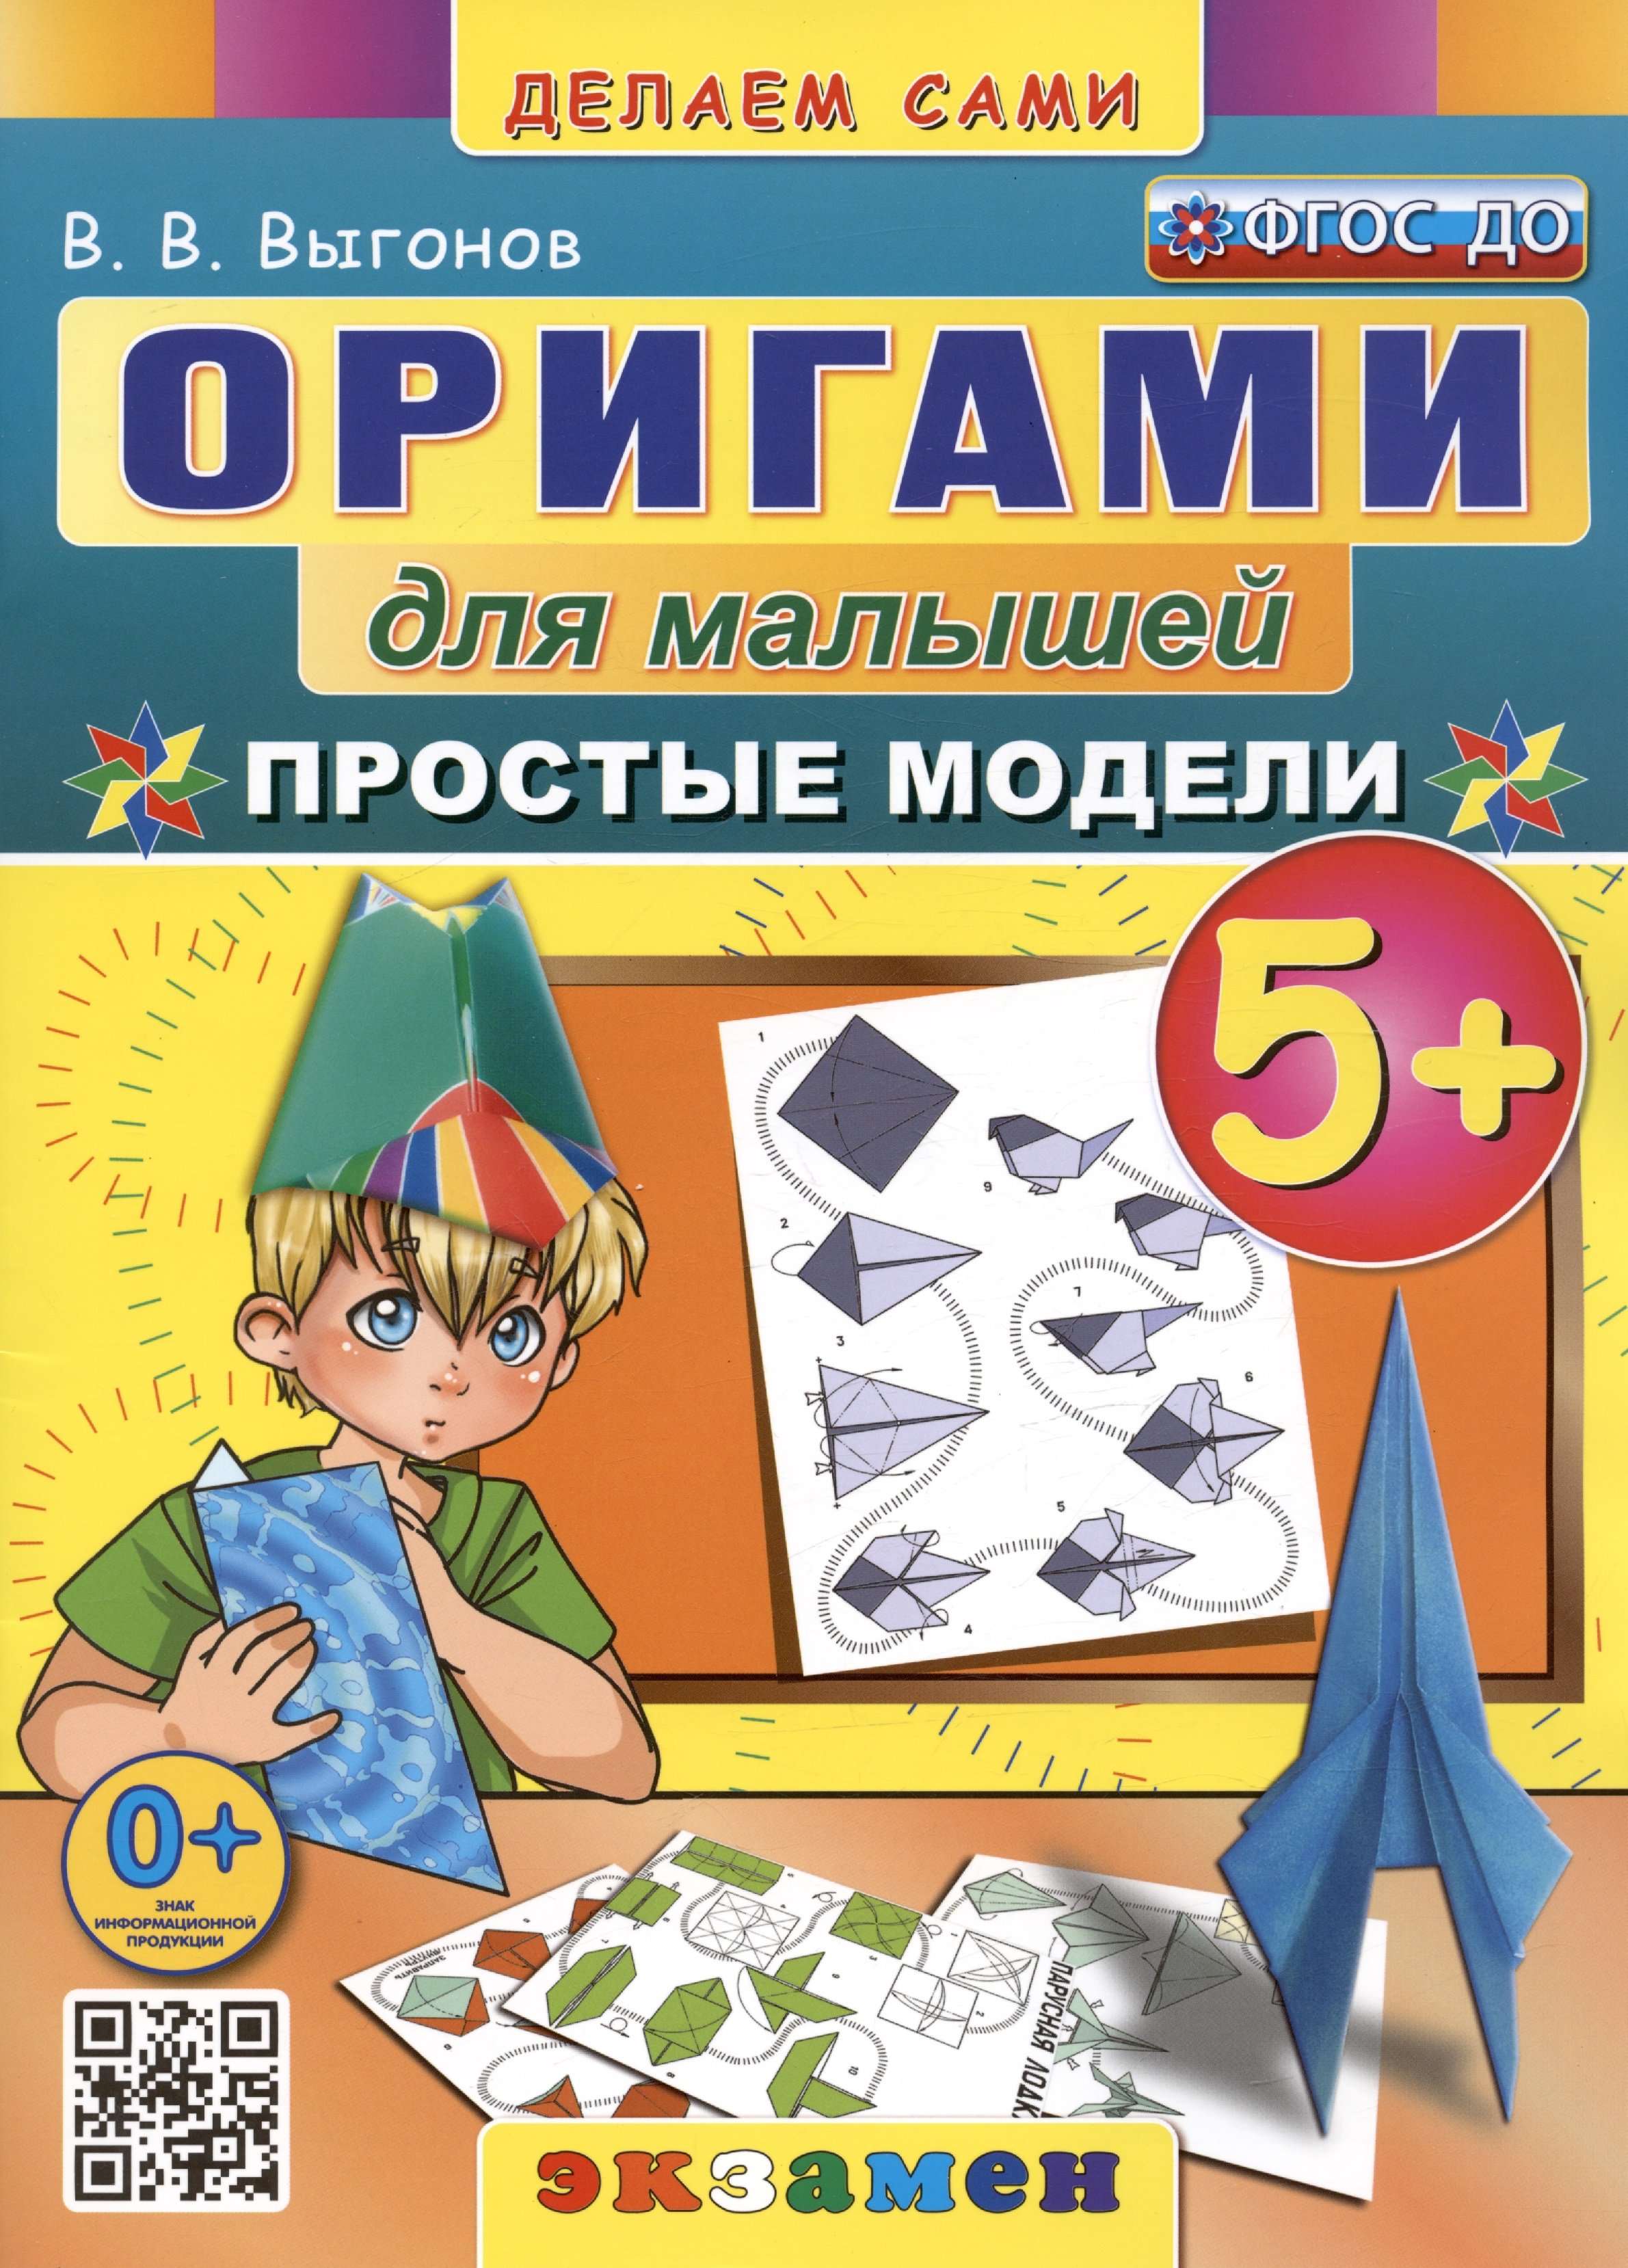 Оригами для малышей. Простые модели. 5+